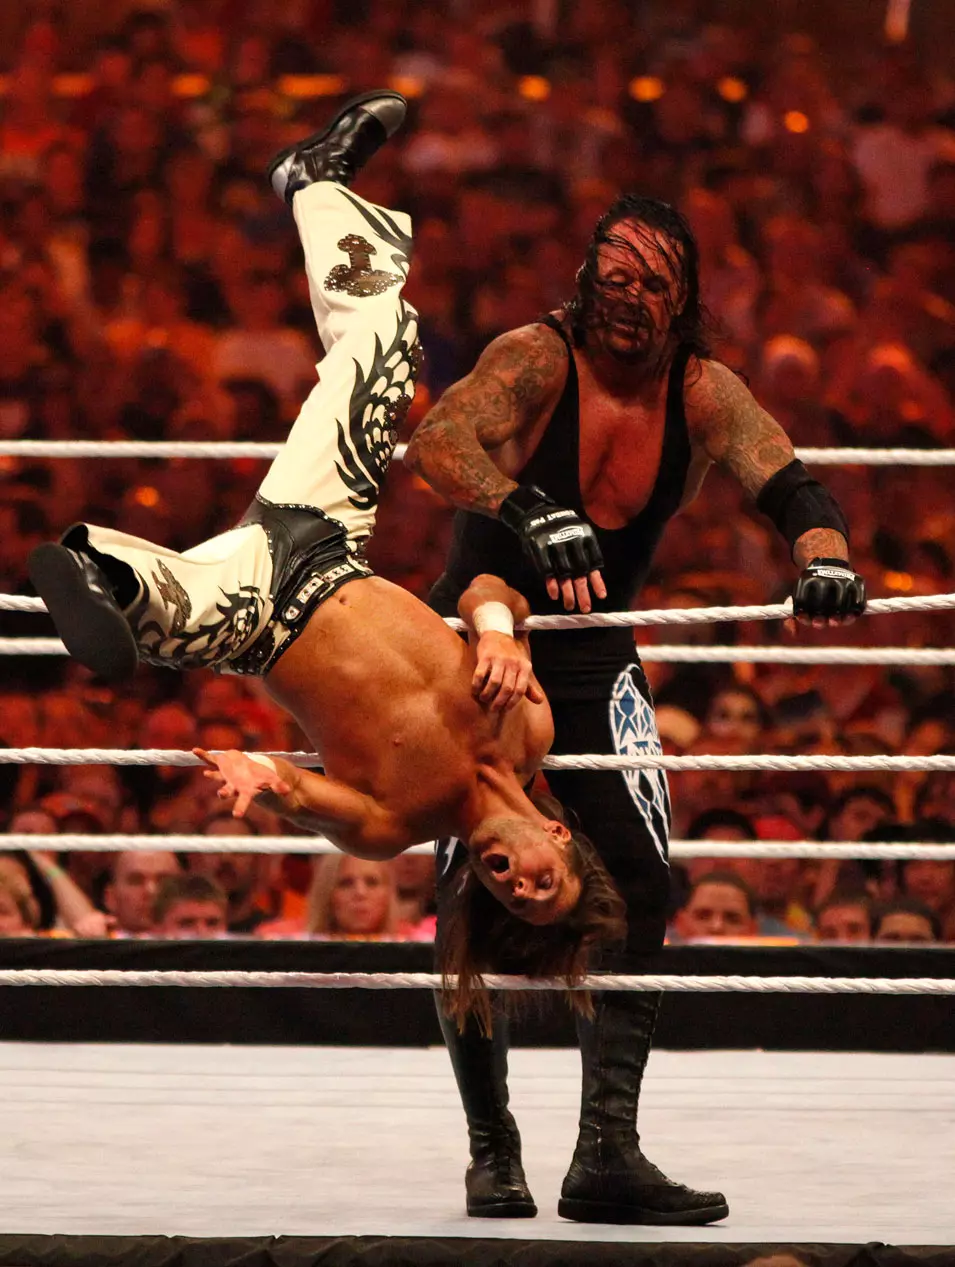 שון מייקלס, אנדרטייקר, מתאבק WWE